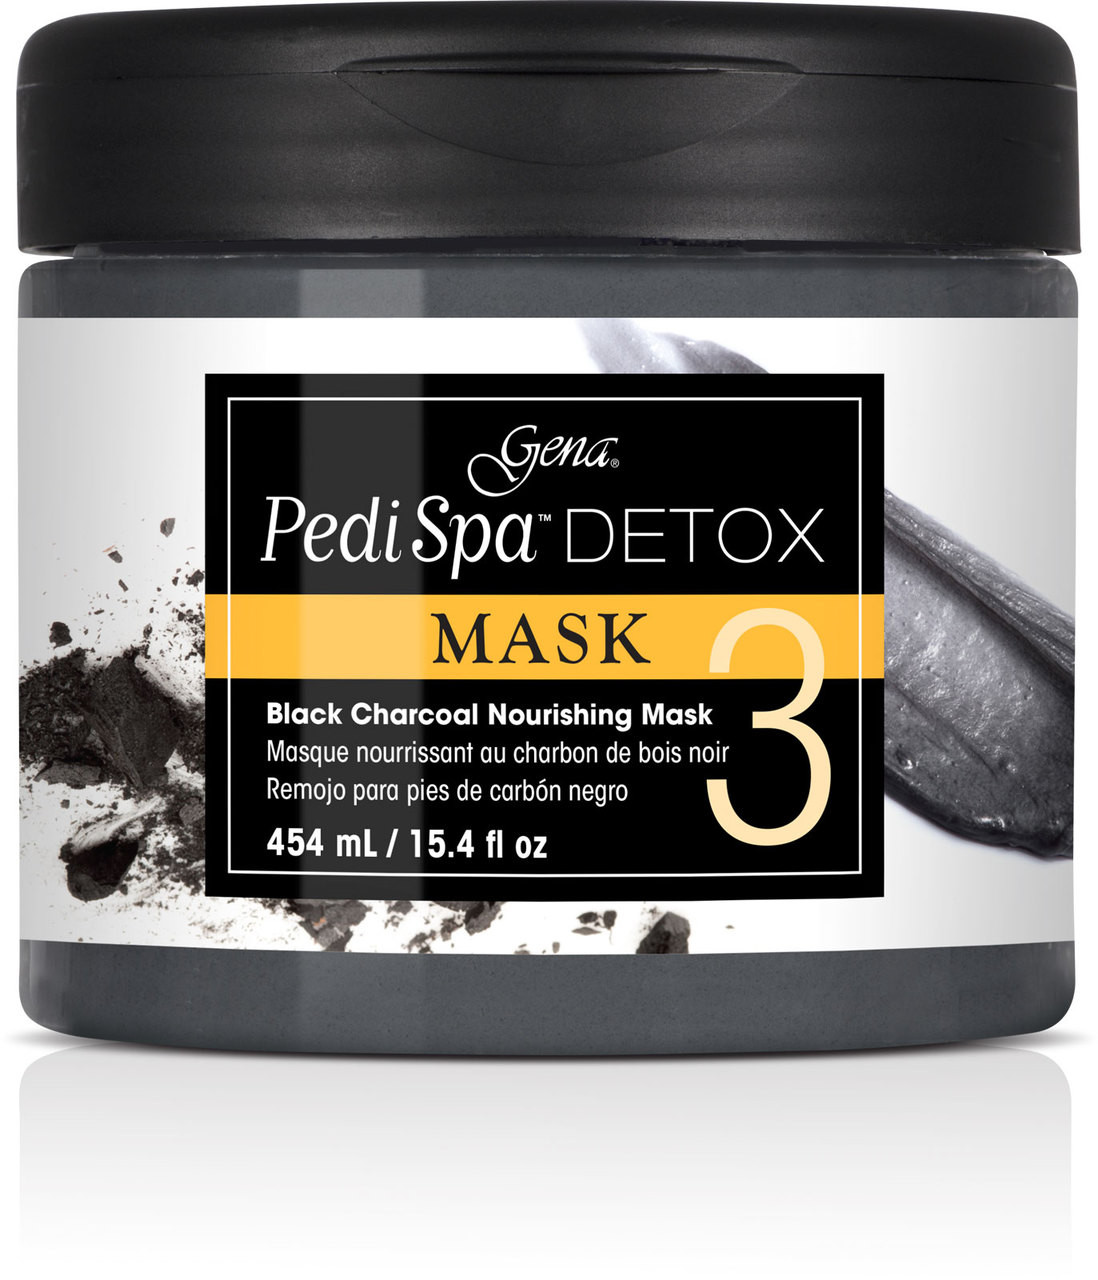 Pedi Spa Detox Black Charcoal Mask 15.4 oz